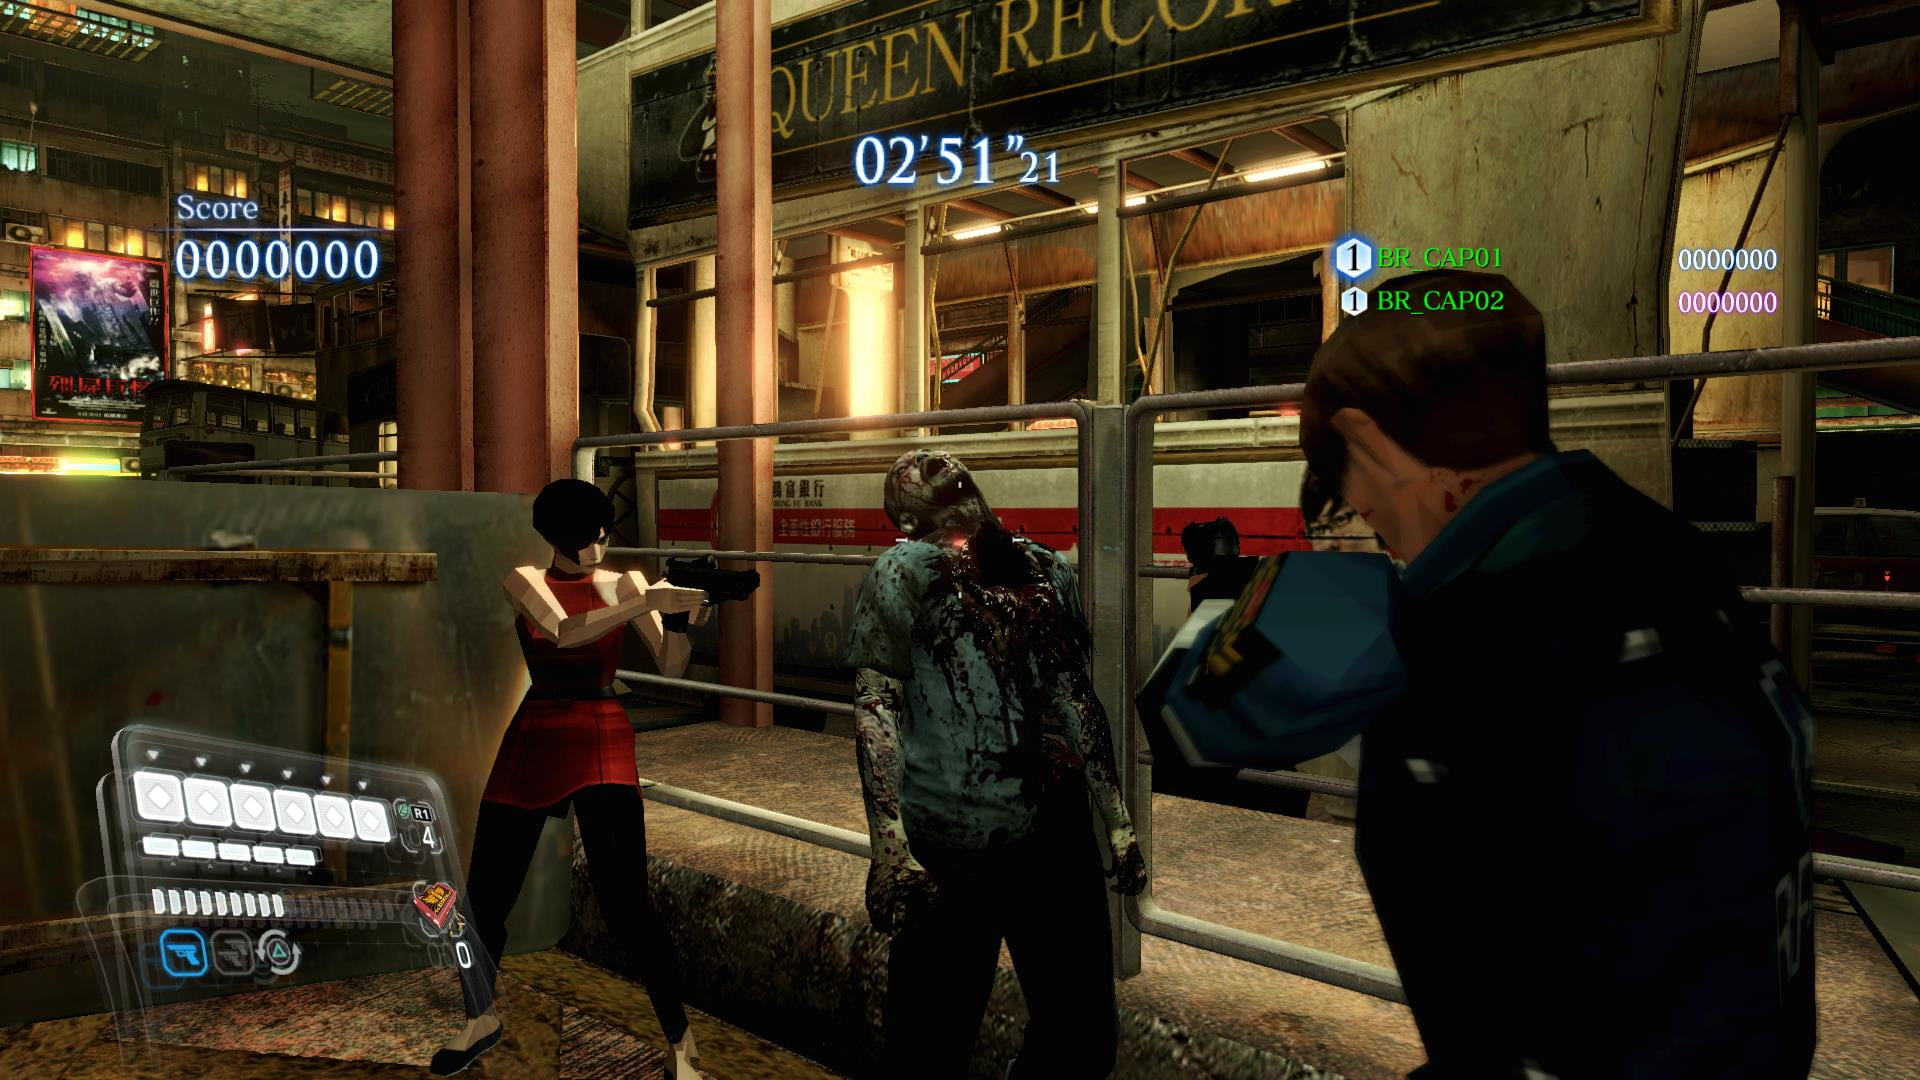 Resident Evil 6 - PS4 em Promoção na Americanas